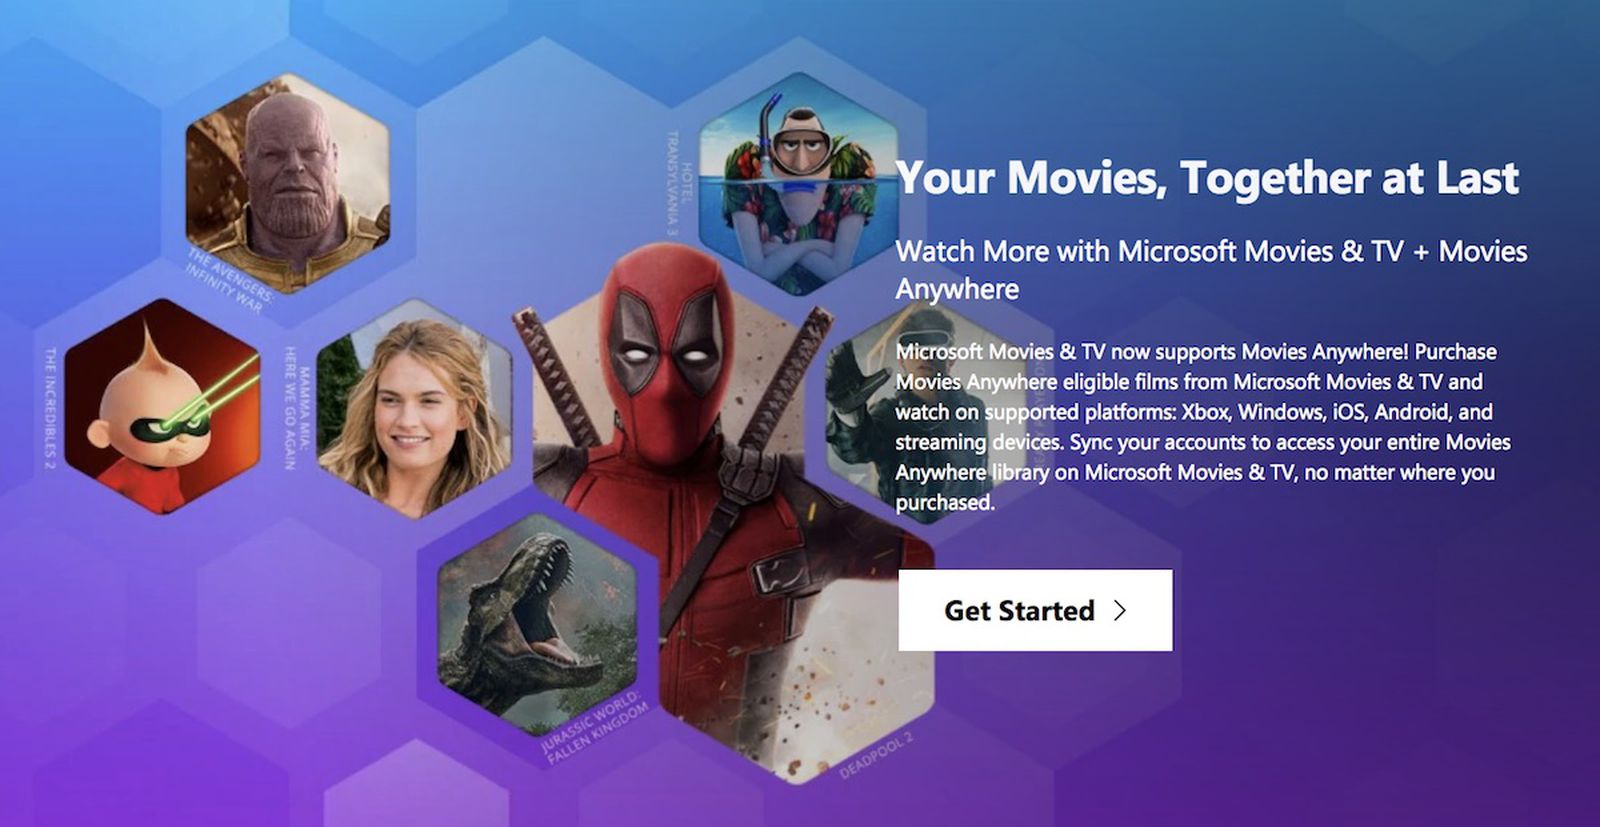 Your movies 1. Microsoft movie. Movies anywhere. Get movies.